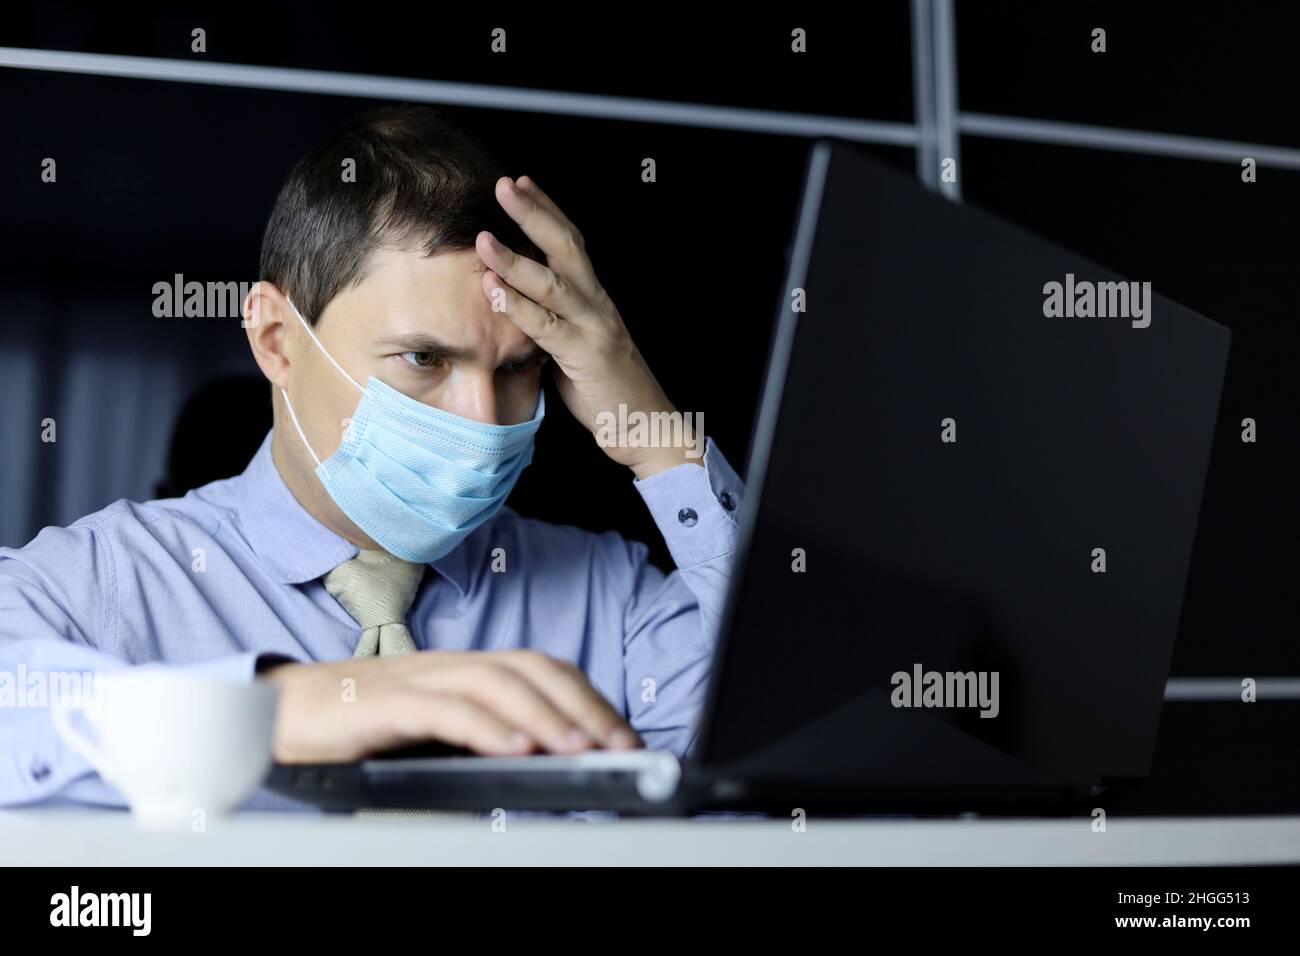 Hombre con máscara facial y ropa de oficina que mira enfocada a la pantalla del portátil. Concepto de resolución de una tarea difícil Foto de stock